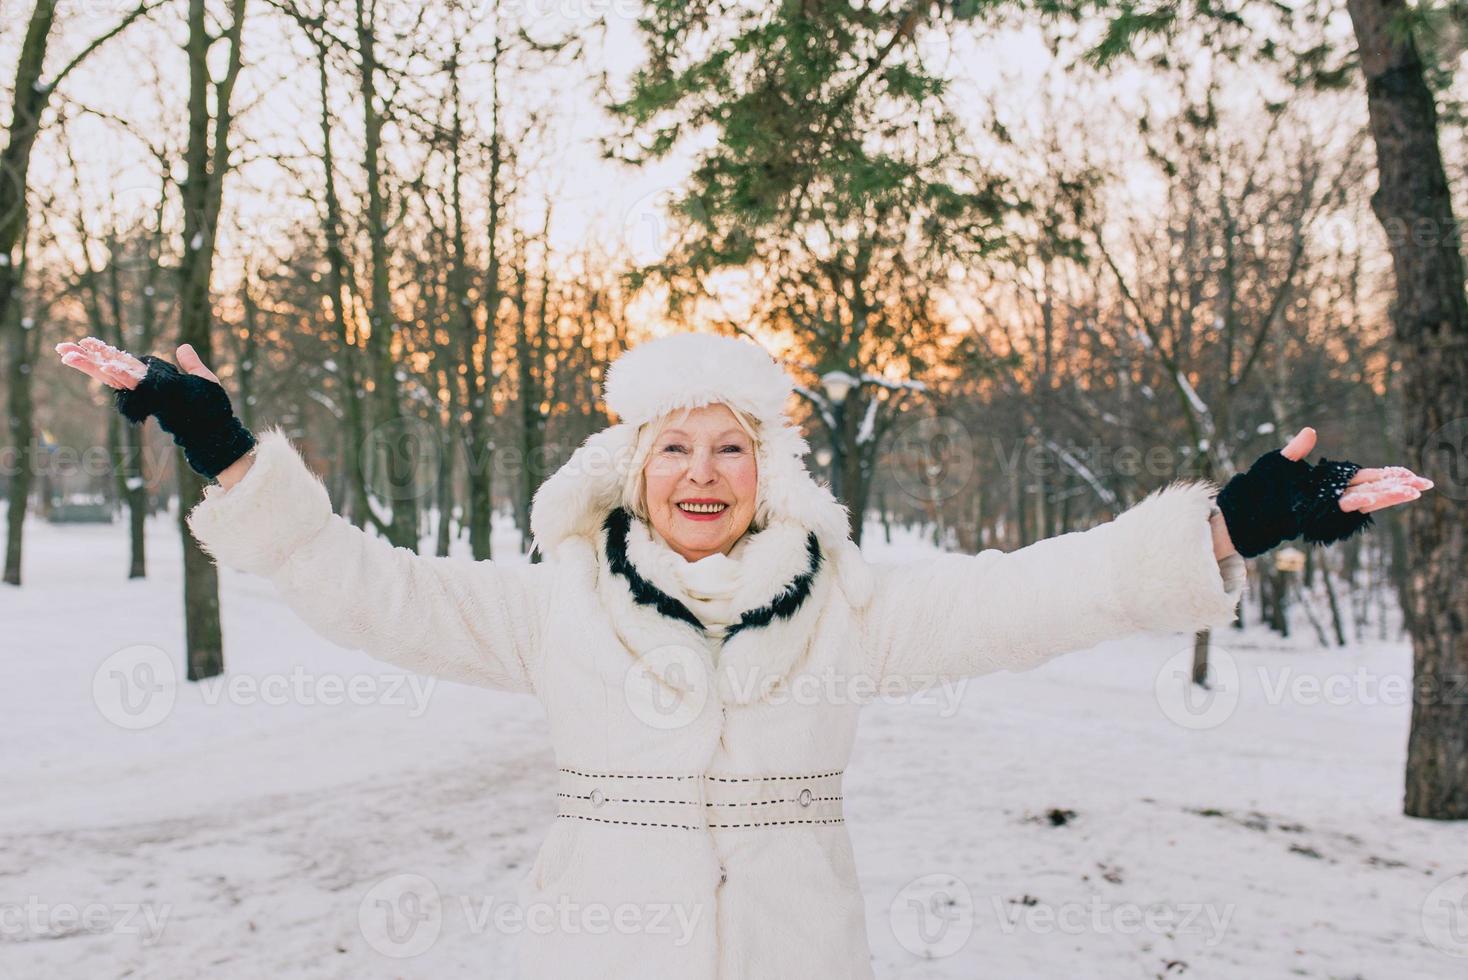 äldre kvinna i vit hatt och kappa njuter av vintern i snöparken. vinter, ålder, säsongskoncept foto